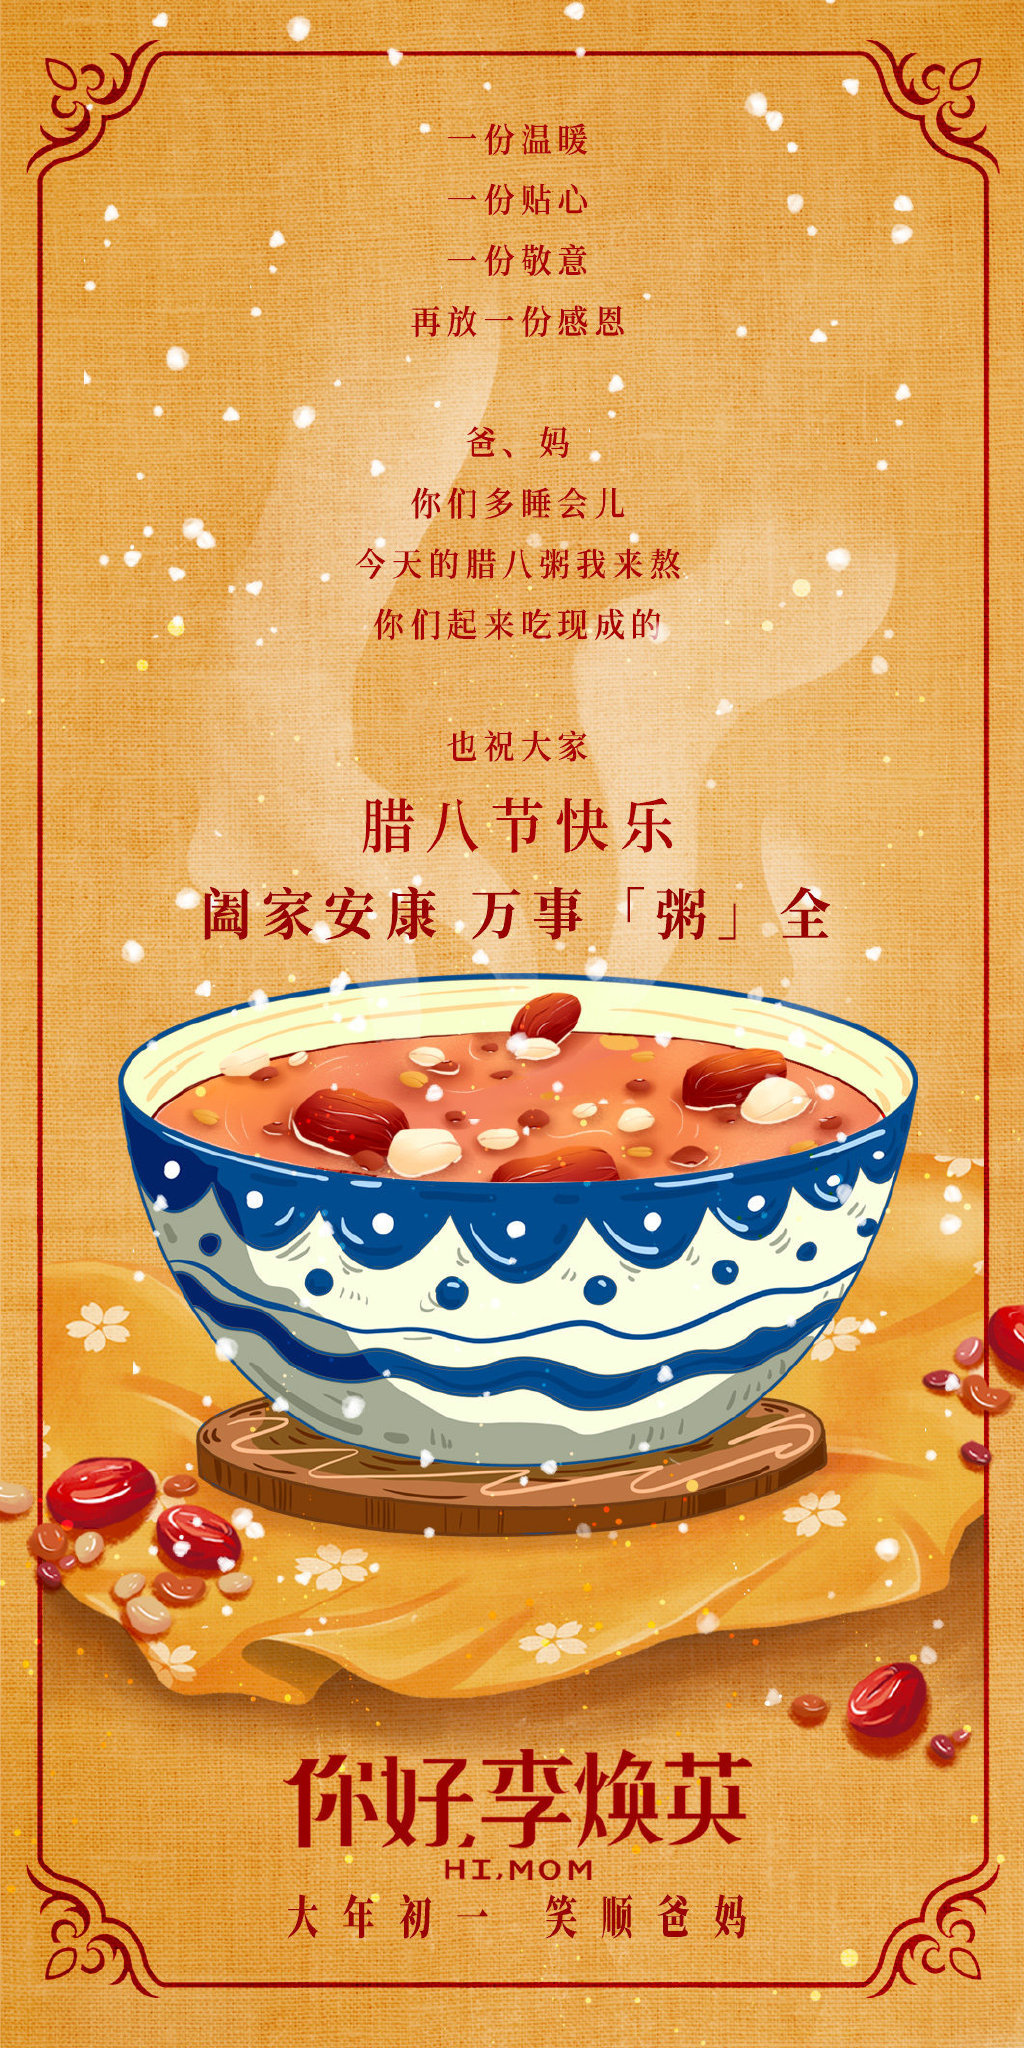 Ni Hao, Li Huan Ying for mac download free